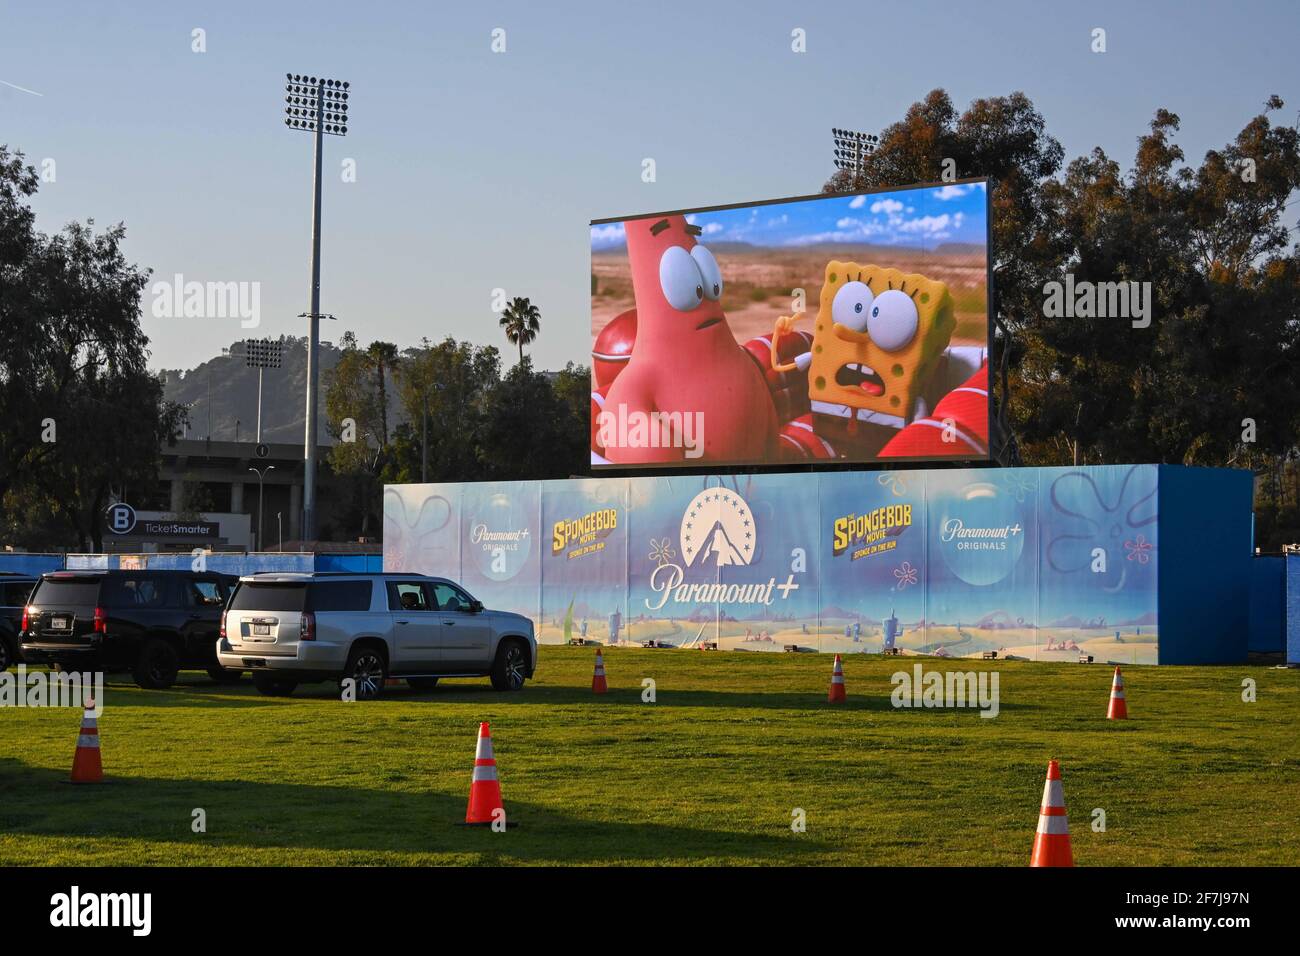 Vista general de una película Paramount+ que muestra la película Spongebob : Sponge on the Run en el Rose Bowl, viernes, 26 de febrero de 2021 en Pasadena Foto de stock